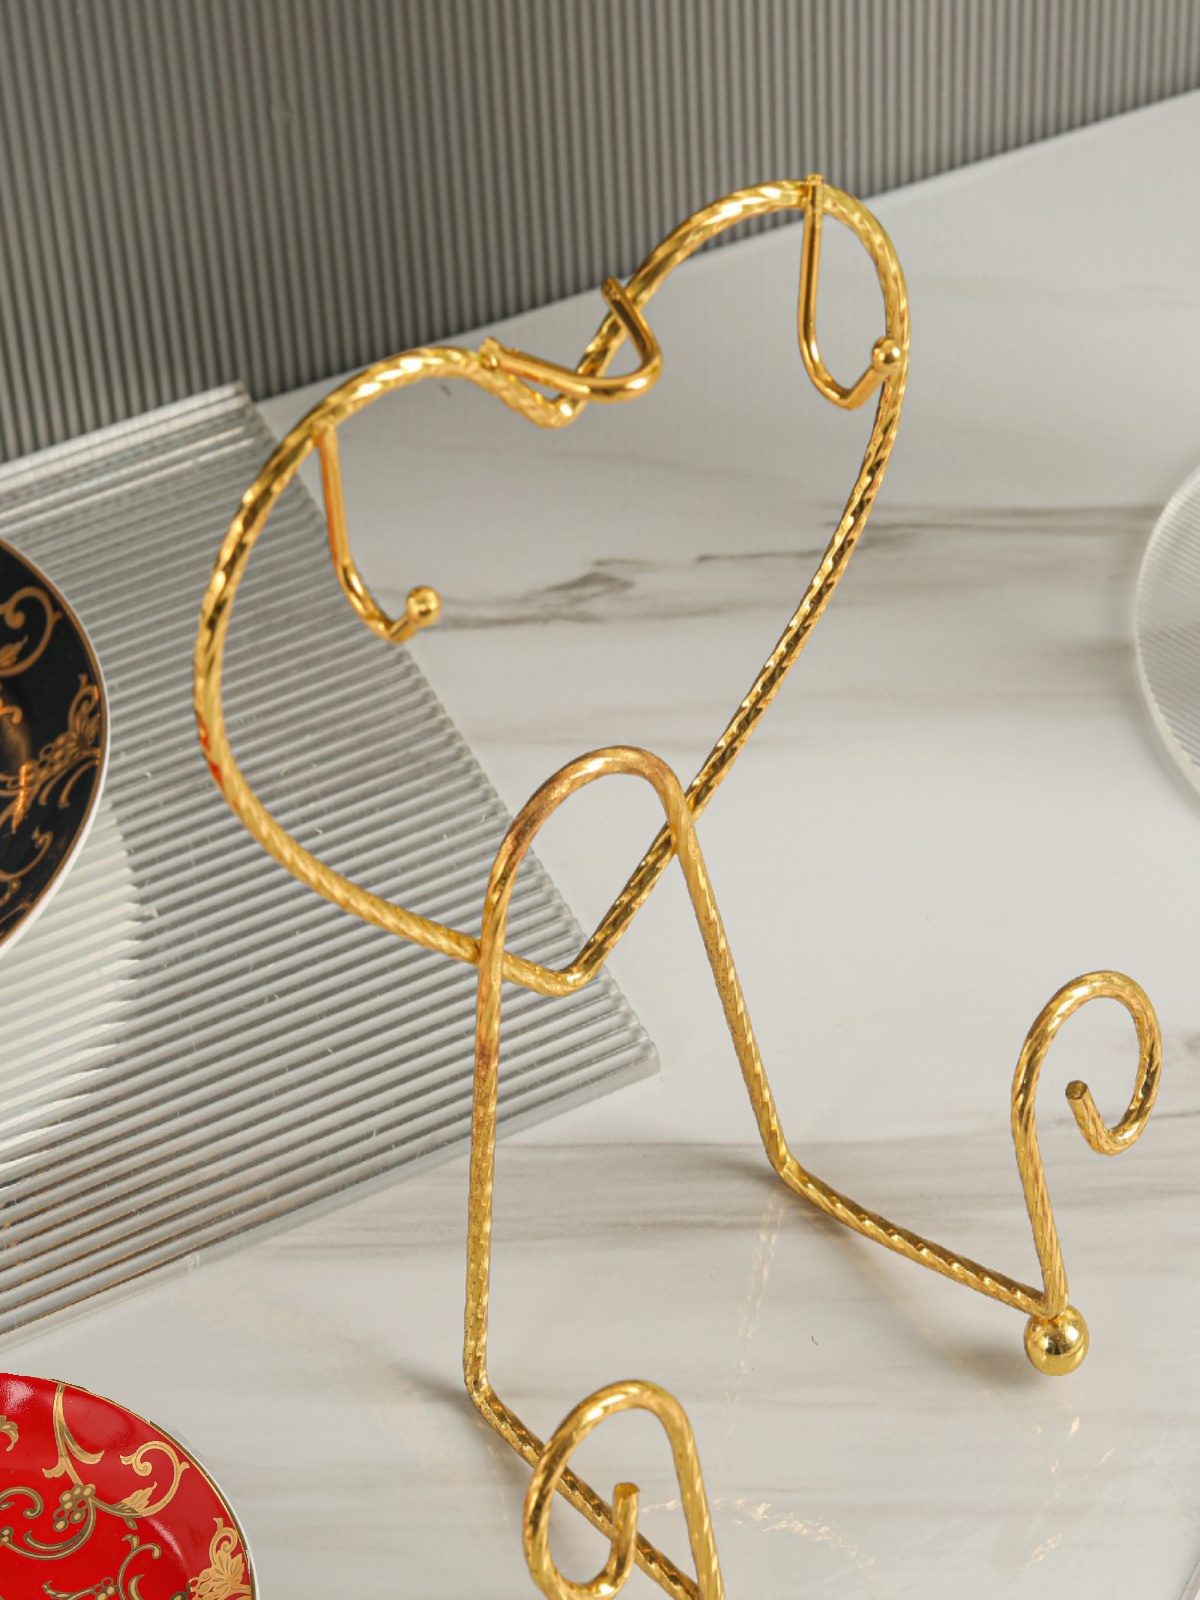 歐式復古鐵質金色杯架 精緻典雅風格 適合居家餐廳使用 (8.3折)